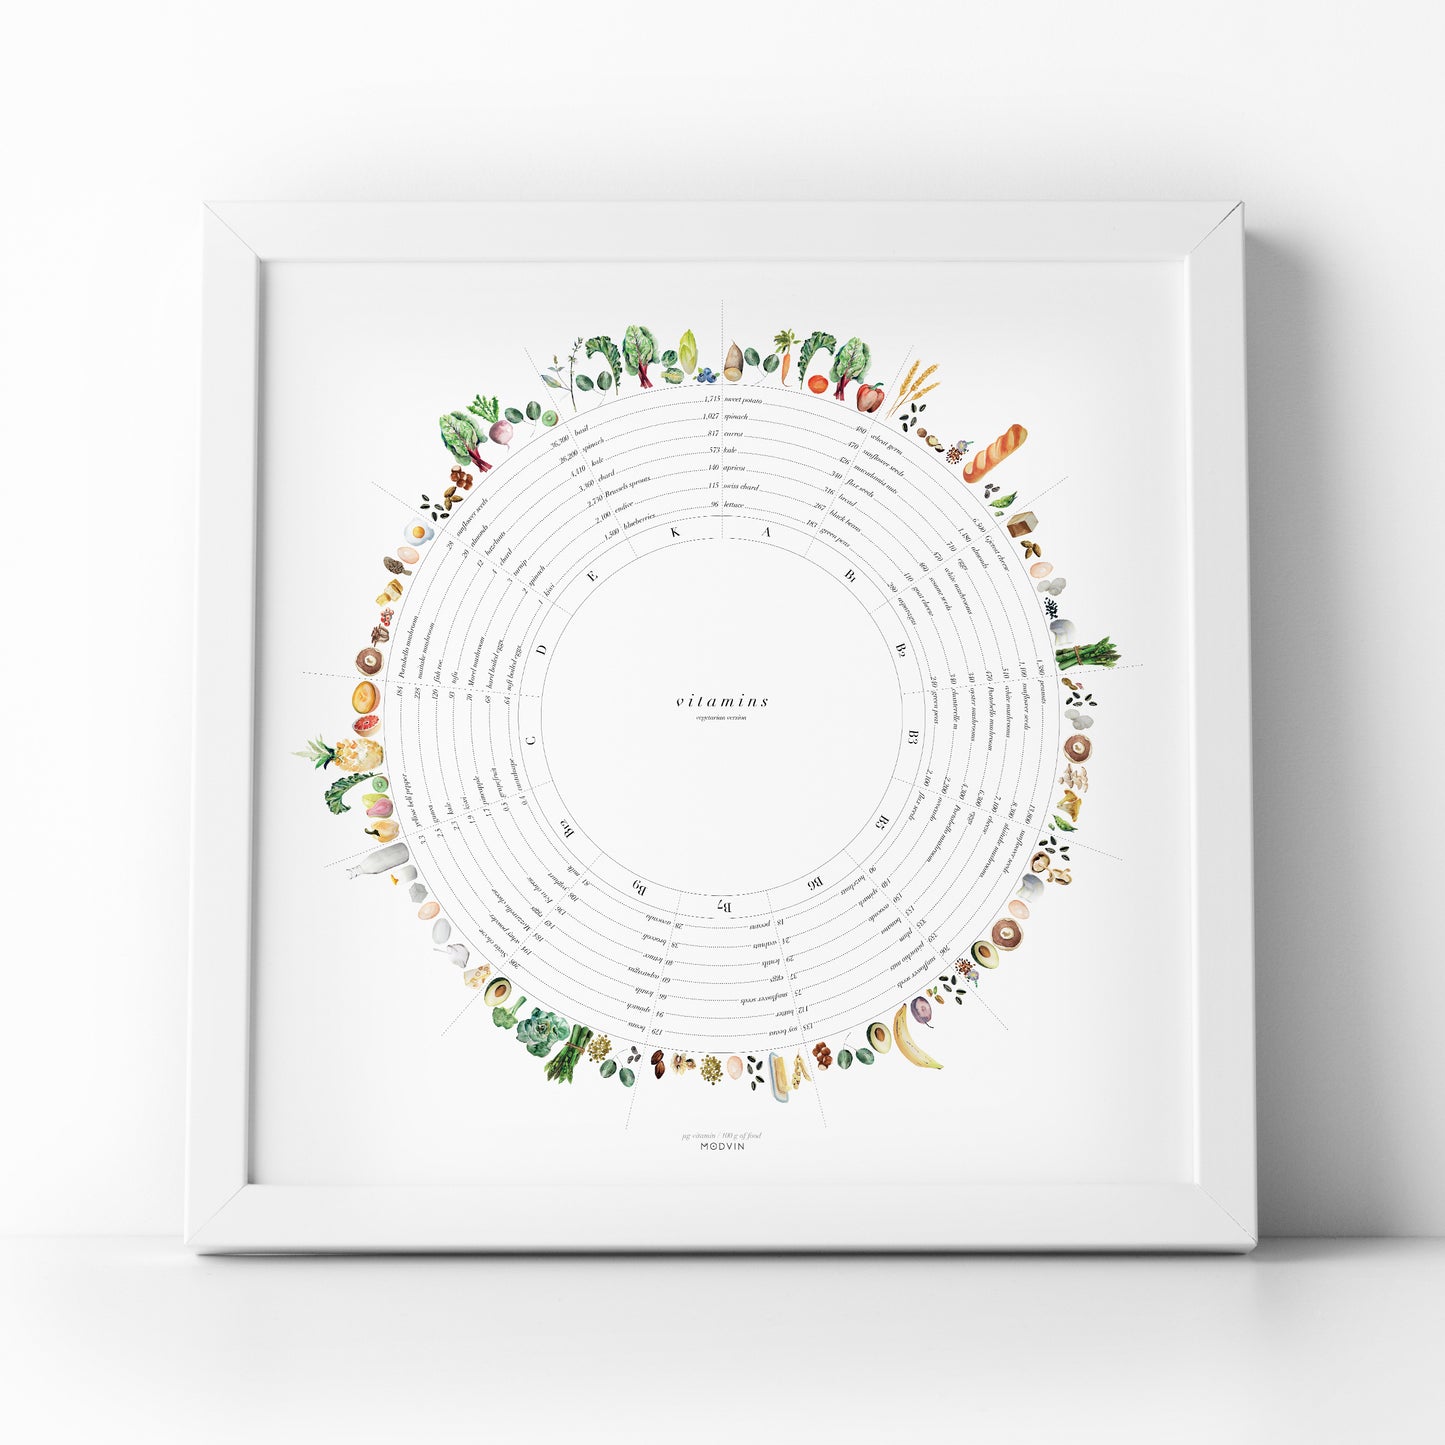 Vitamin Wheel Art Print - Vegetarian